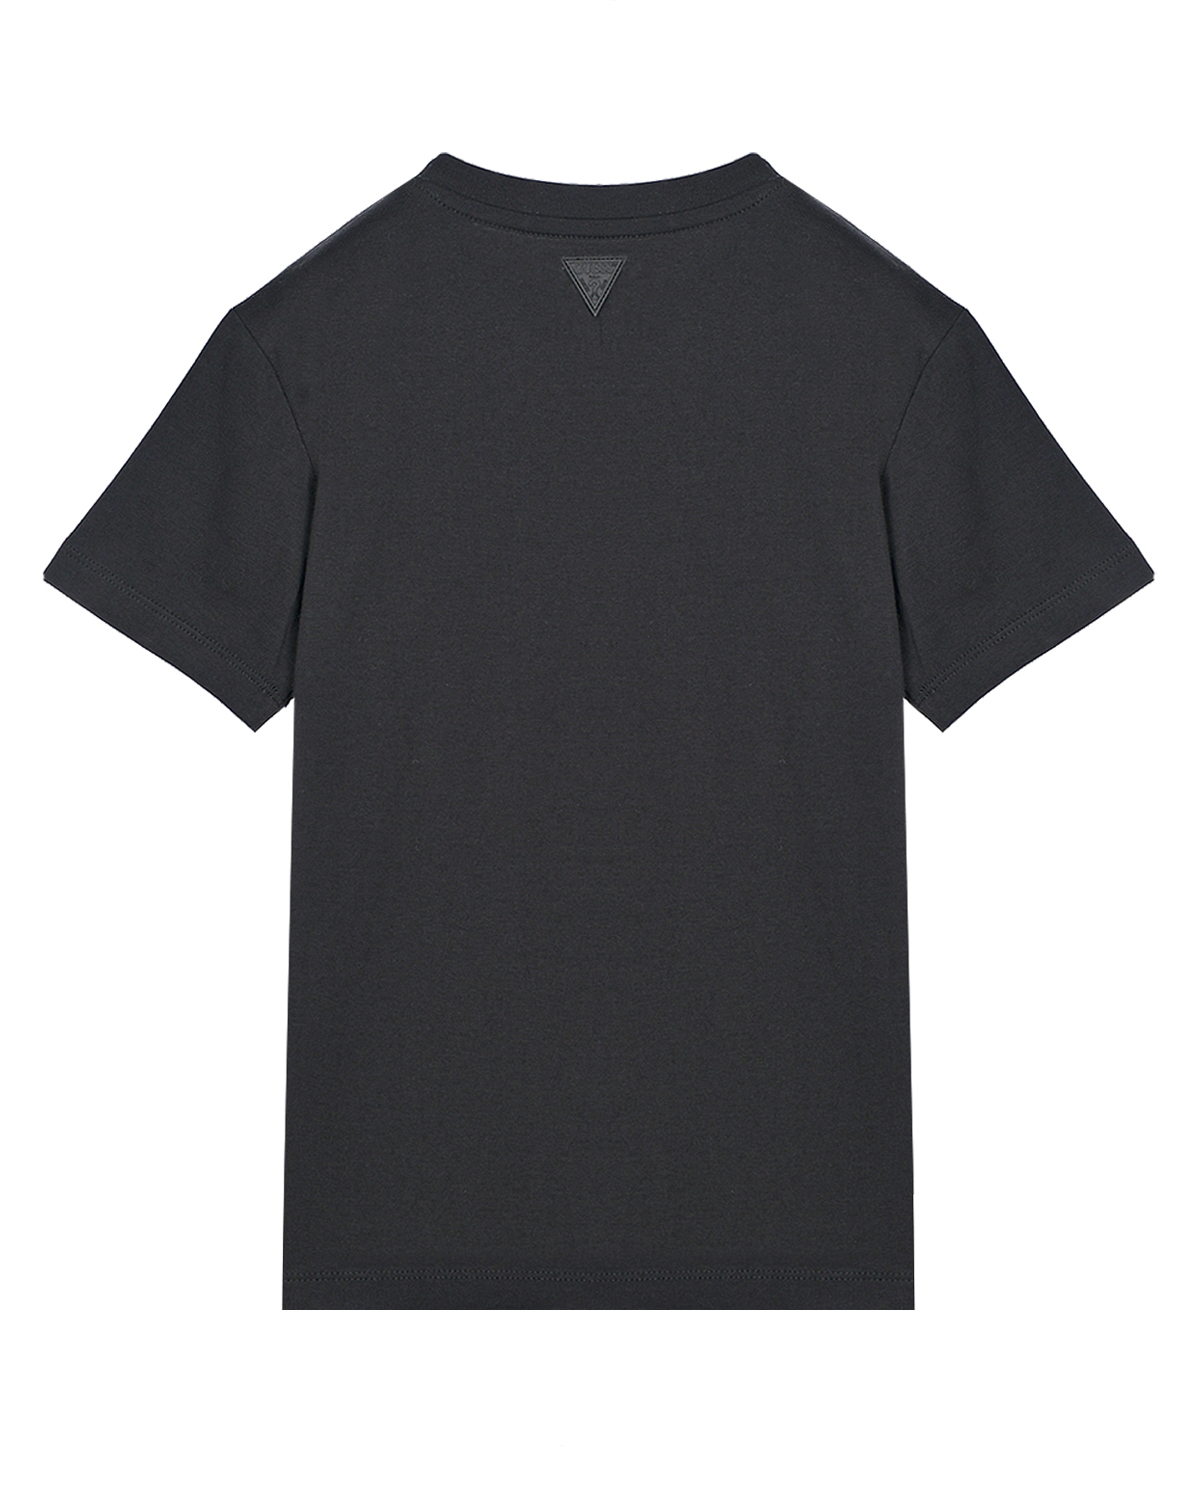 Черная футболка с объемным лого Guess детская, размер 128, цвет черный - фото 2